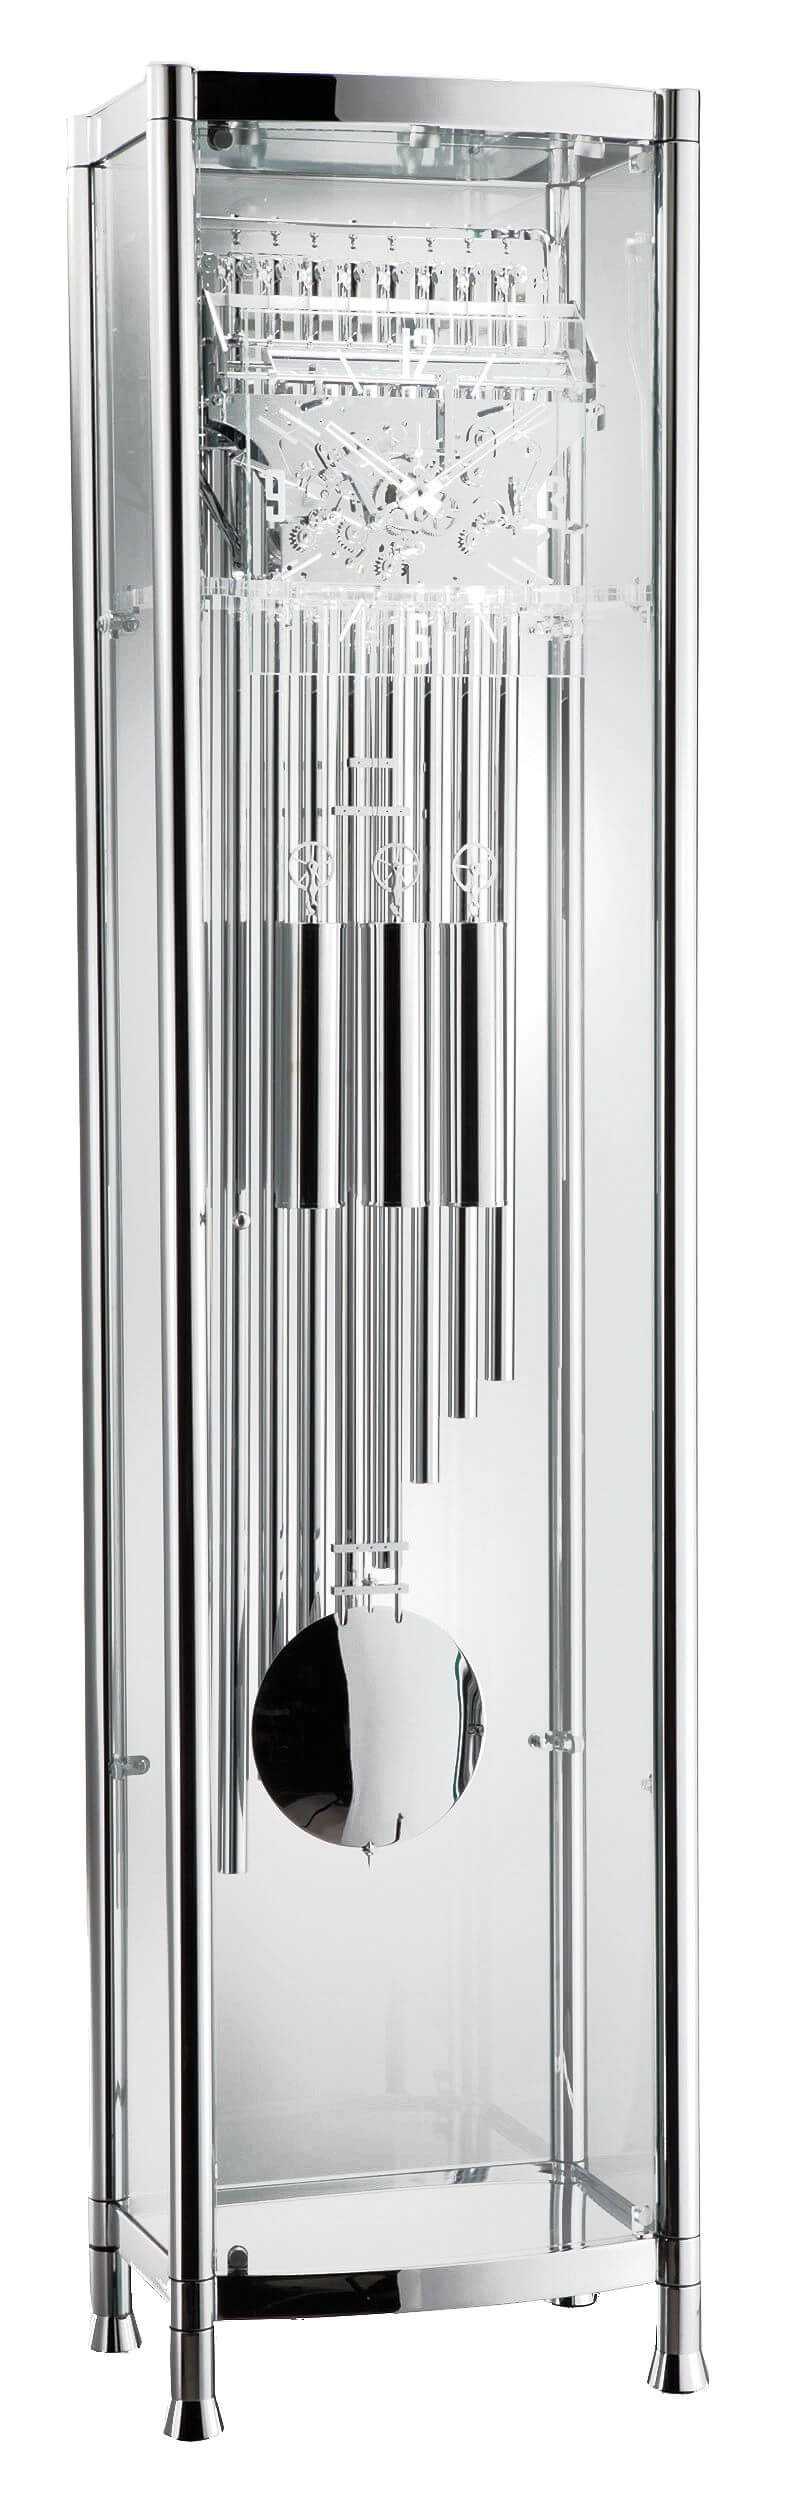 Kieninger -Standuhr modern Chrom Glas Röhrengong Mechanisch 208cm- 0126-02-01